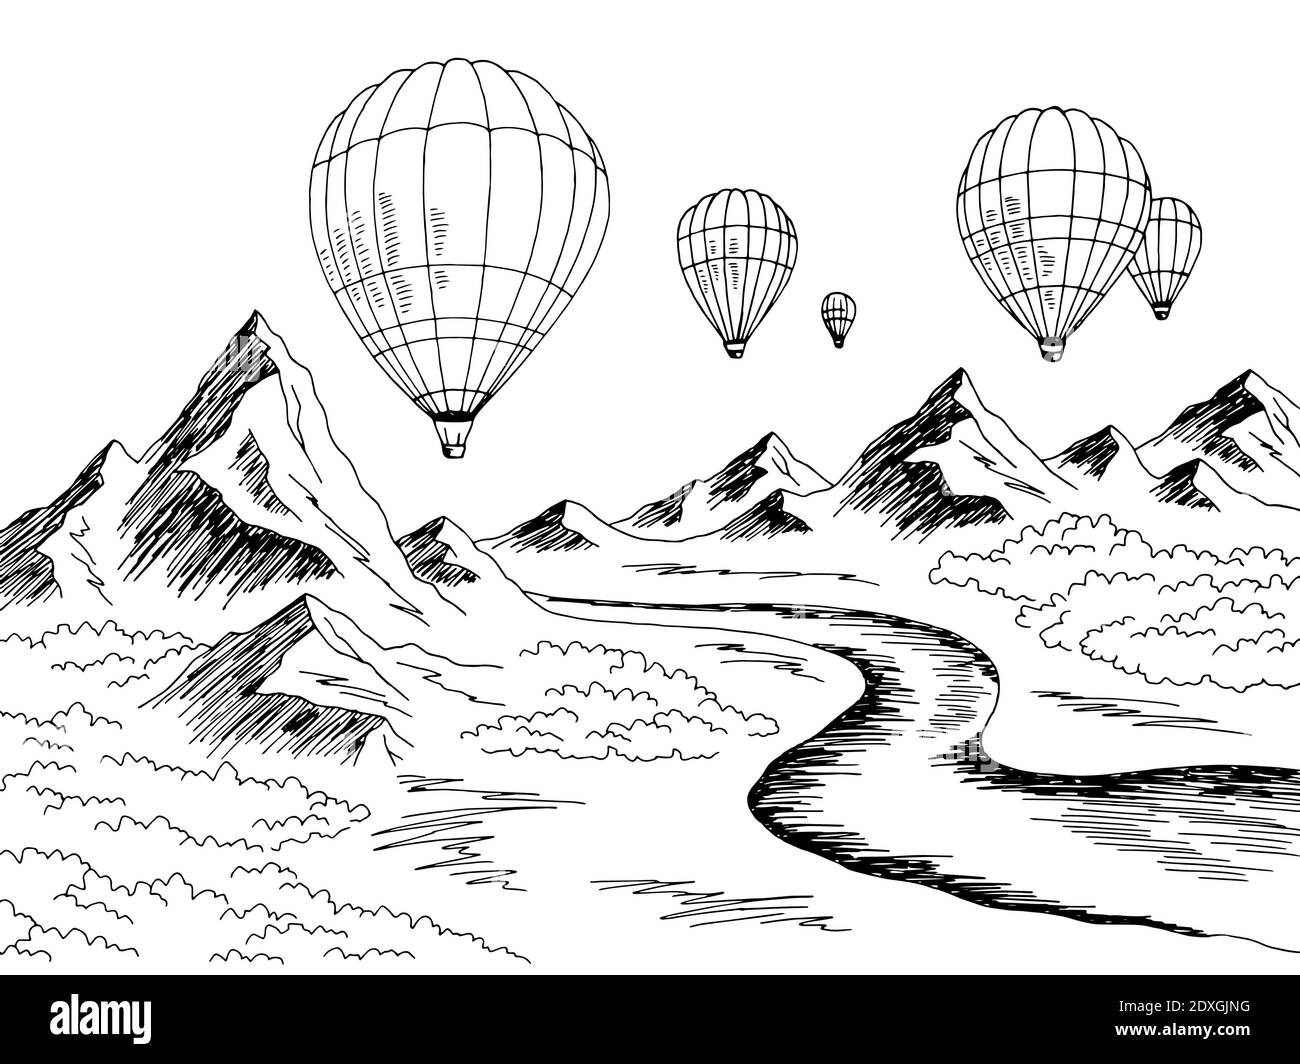 Air montgolfière voyage montagne rivière graphique noir blanc paysage esquisse vecteur d'illustration Illustration de Vecteur